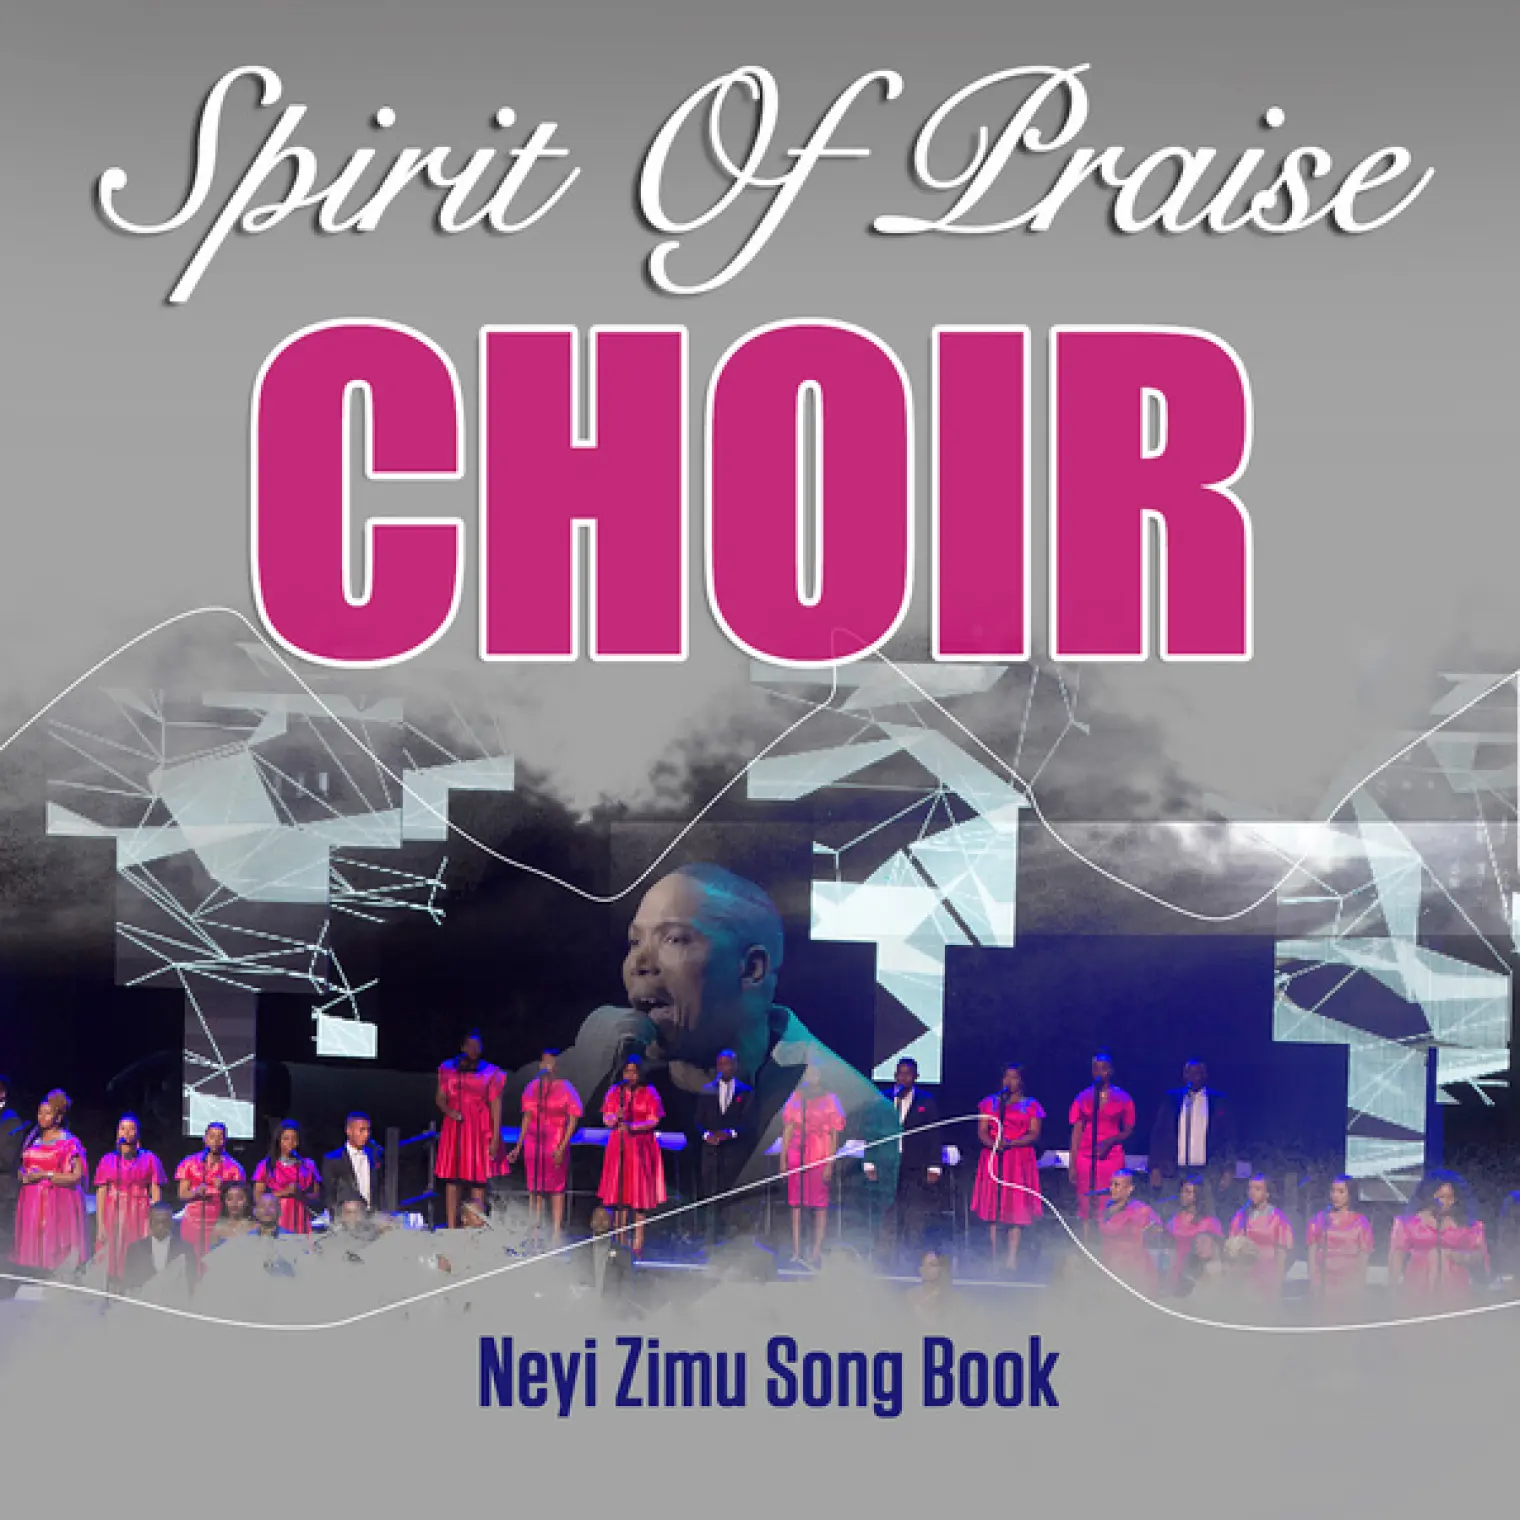 Neyi Zimu Song Book -  Spirit of Praise Choir 